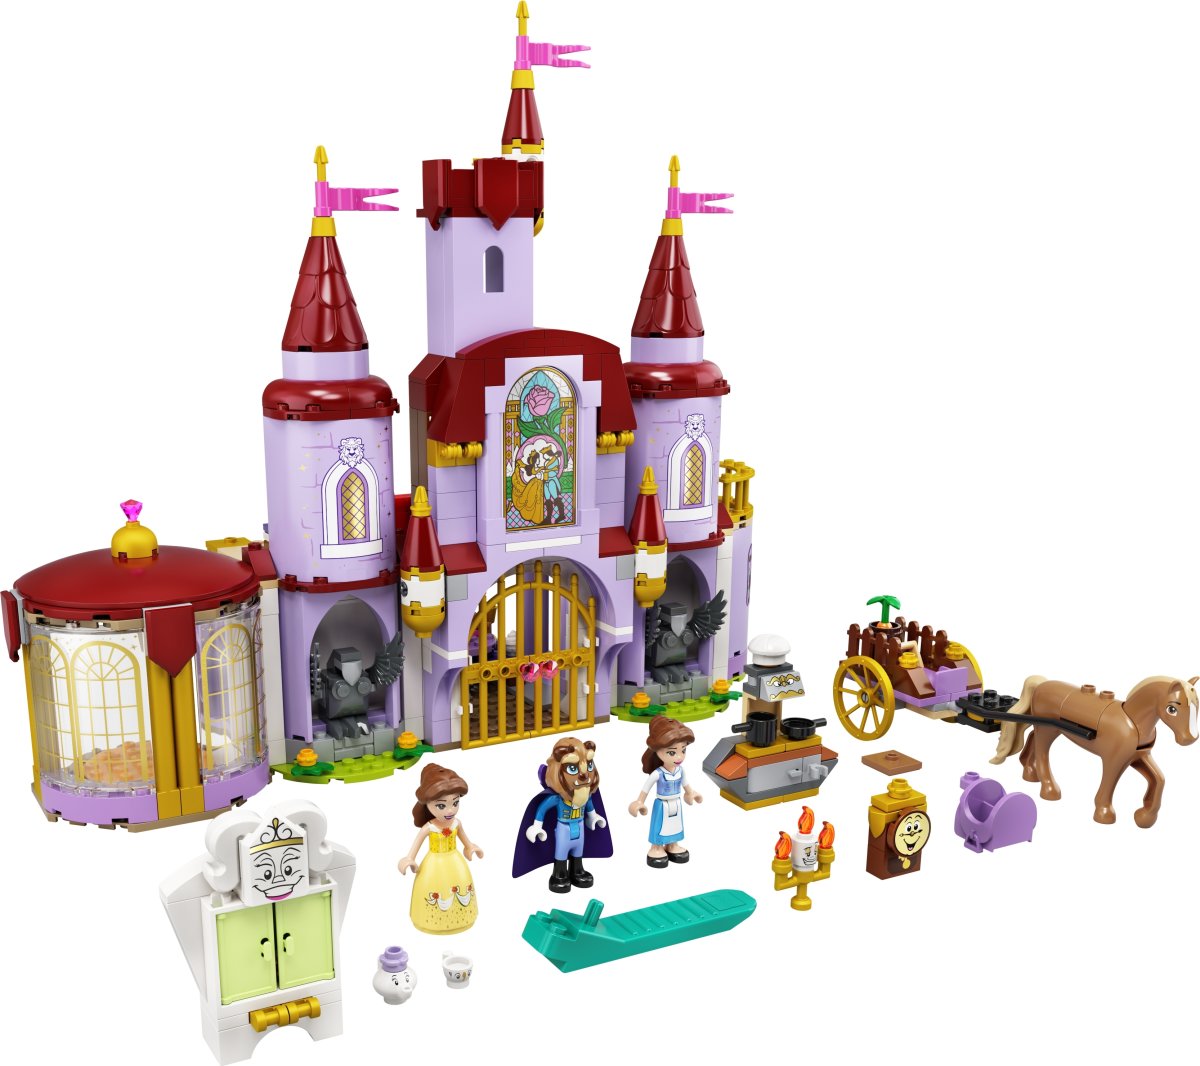 LEGO Disney 43196 Belle og Udyrets slot, 6+